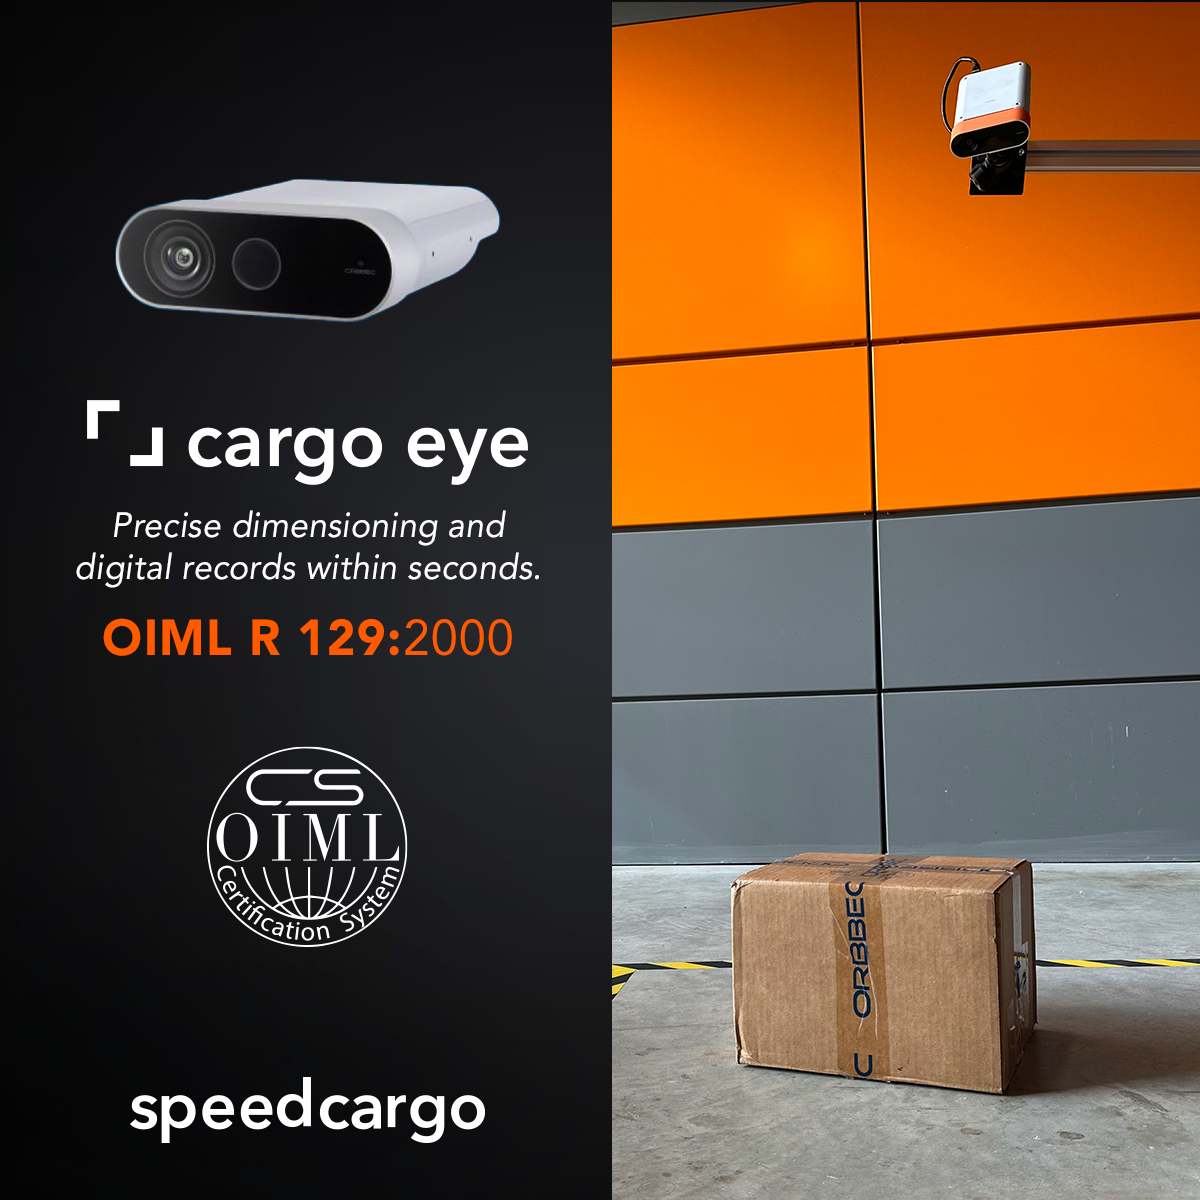 Cargo Eye is Now OIML Certified